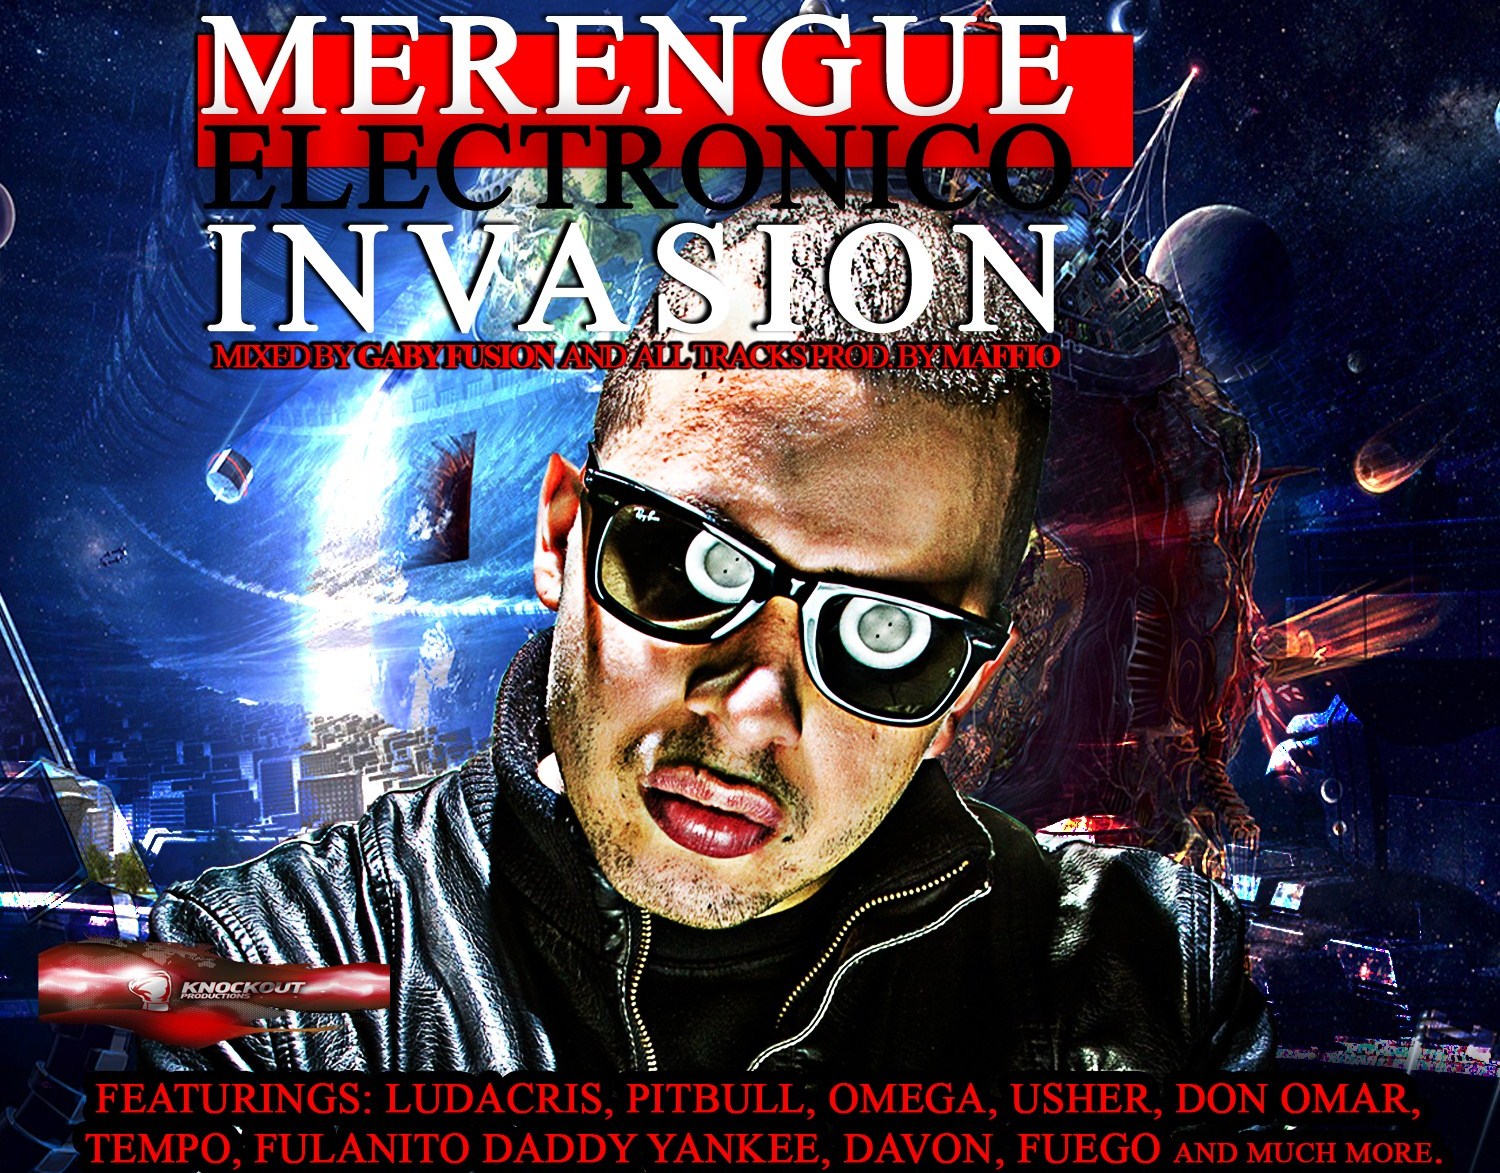 Merengue Electronico Invasion. The MixTape Merengue+Electronico+Invasion+Front+coverCROPPED